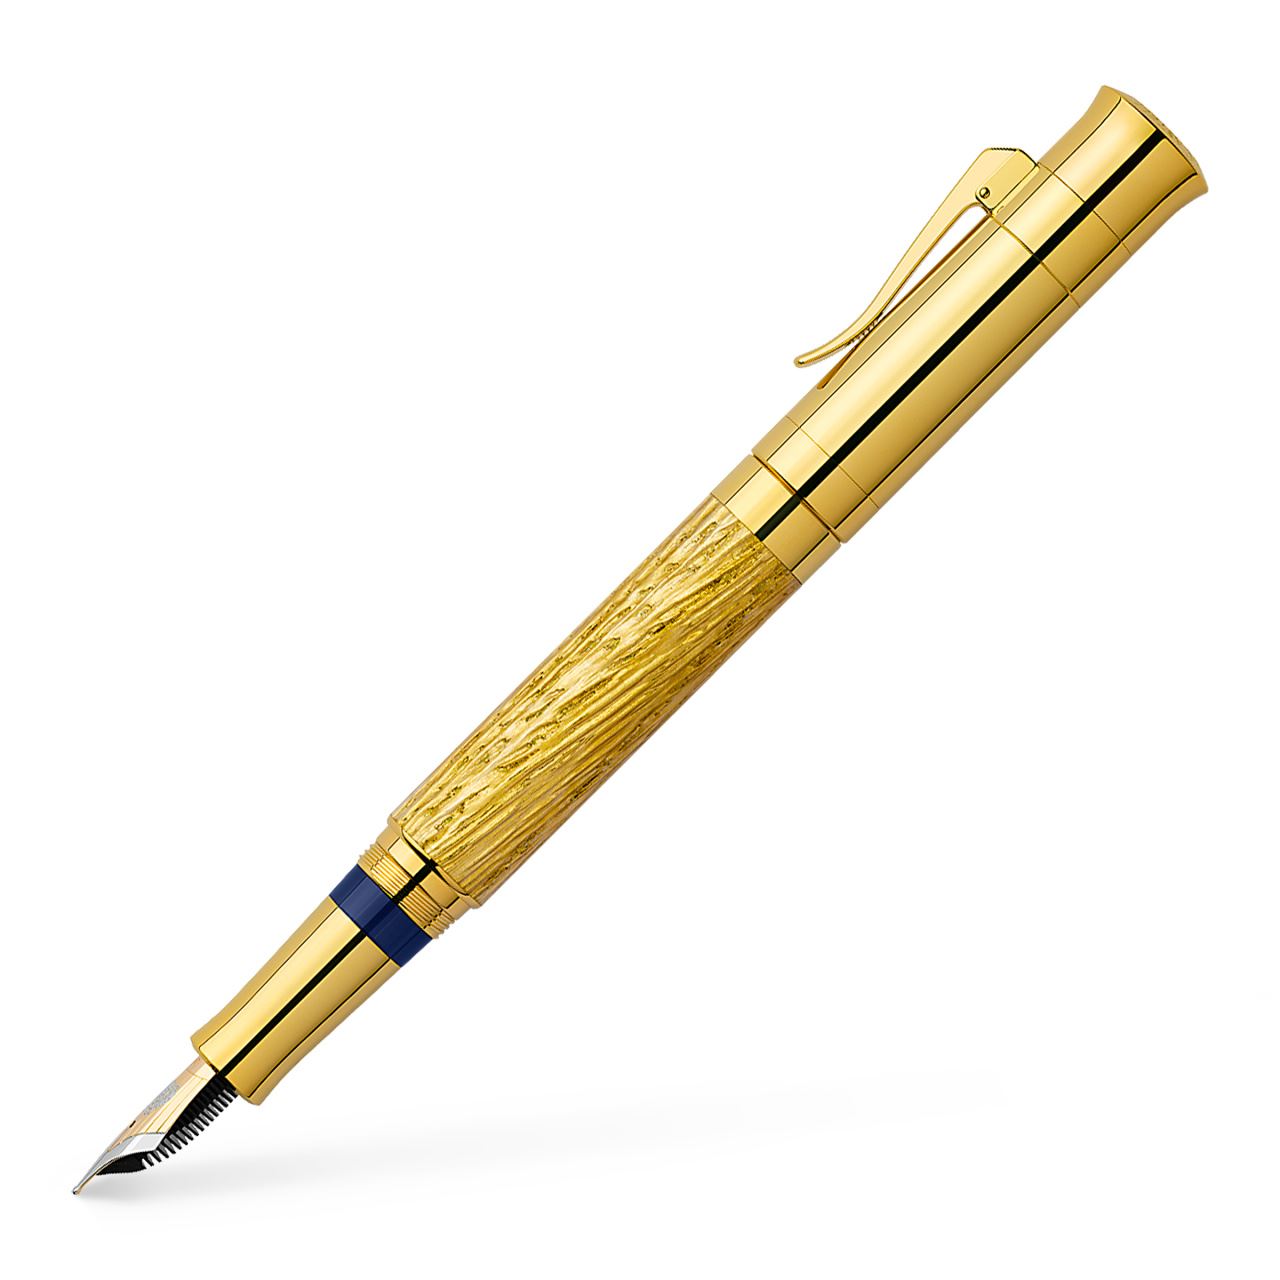 Graf-von-Faber-Castell - Stilografica Pen of The Year 2012, M